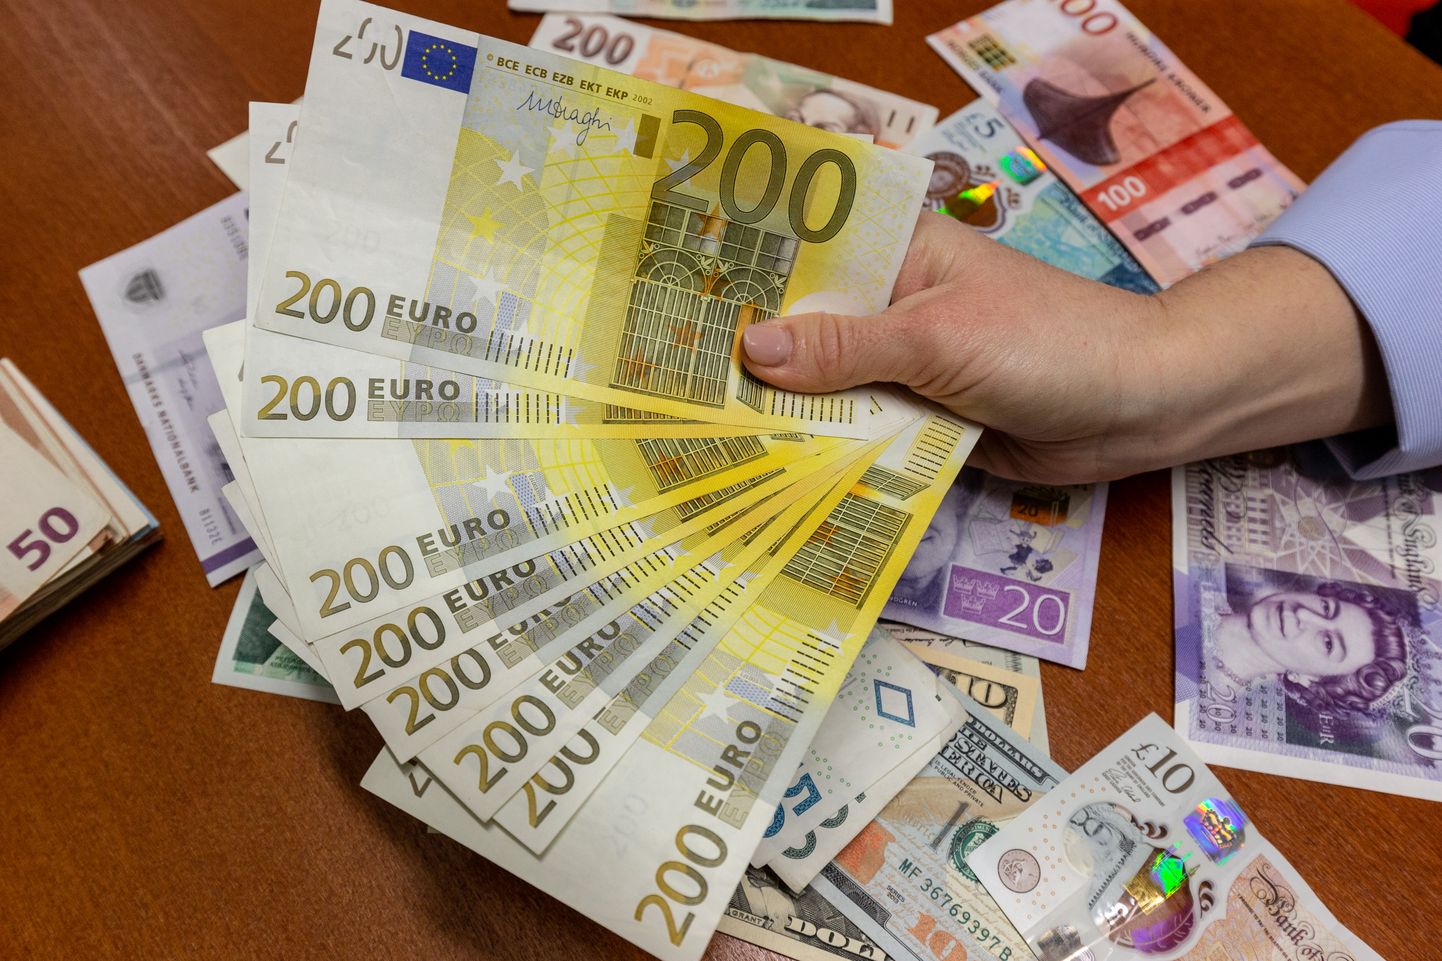 Üks Tartu mees jäi petiste tegutsemise tõttu ilma 18 000 eurost.